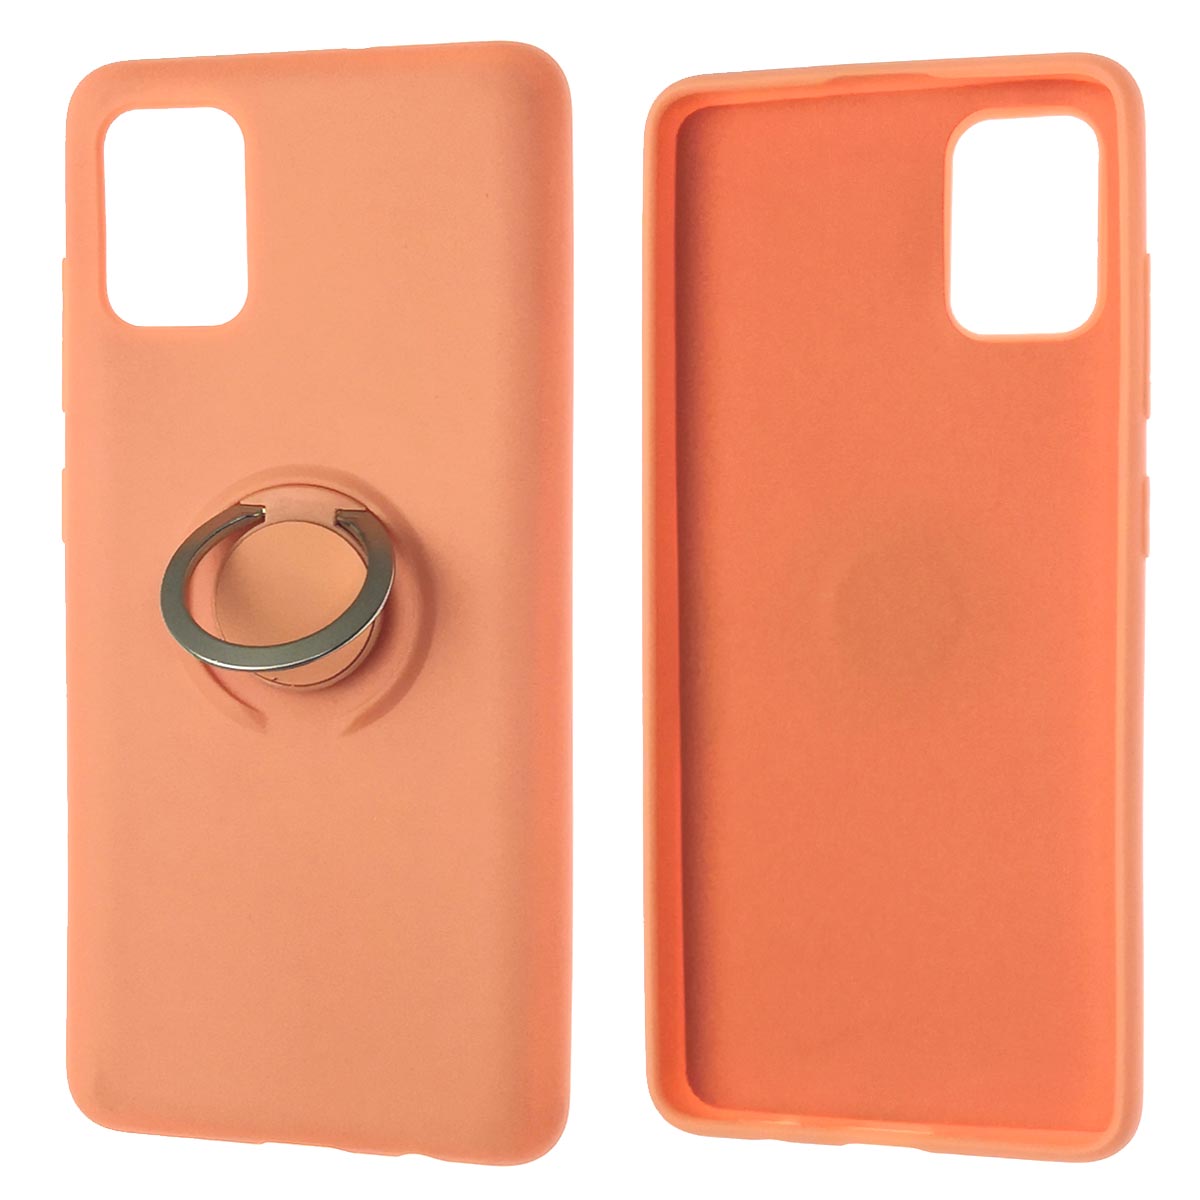 Чехол накладка RING для SAMSUNG Galaxy A51 (SM-A515), силикон, бархат, кольцо держатель, цвет персиковый